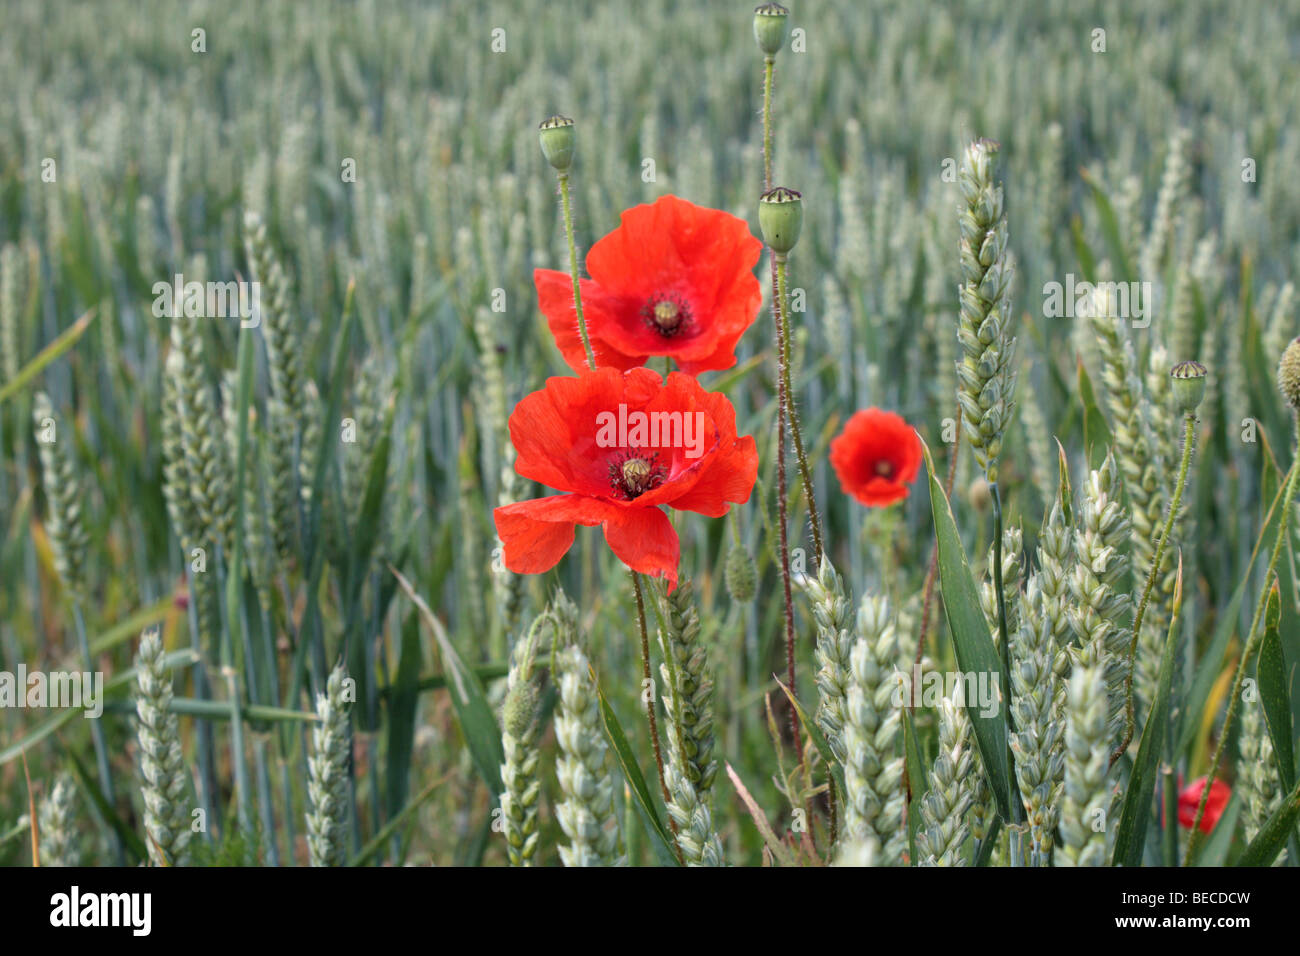 Field or Corn poppy Papaver rhoeas, in a wheat field in Surrey, England, UK. Stock Photo